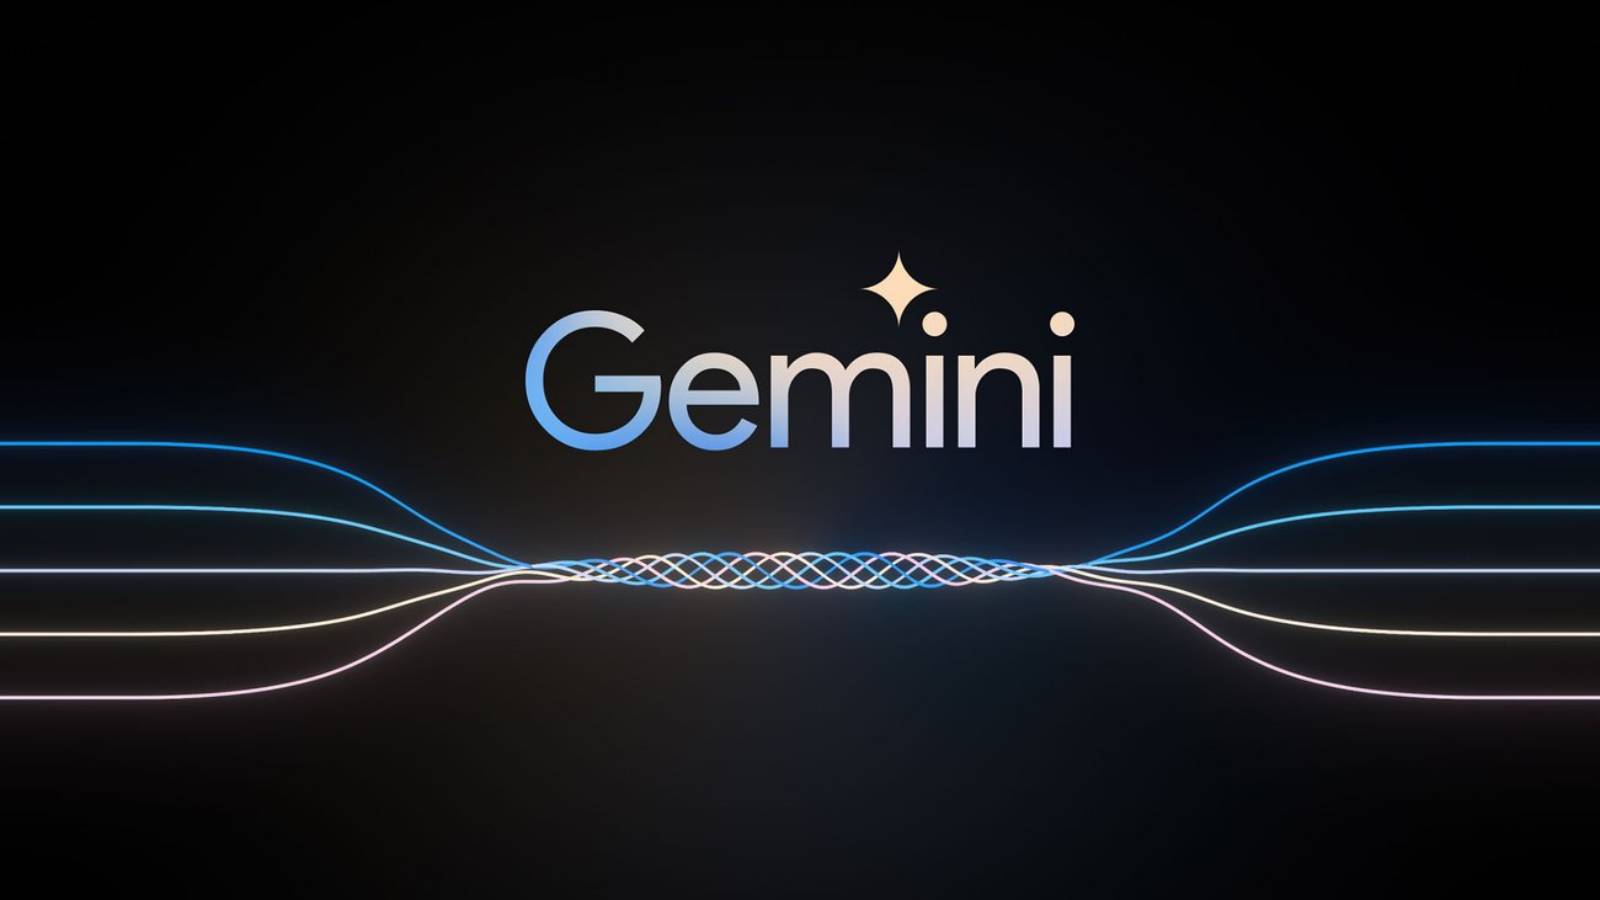 Google ENORMI CAMBIAMENTI Intelligenza artificiale Android Gemini